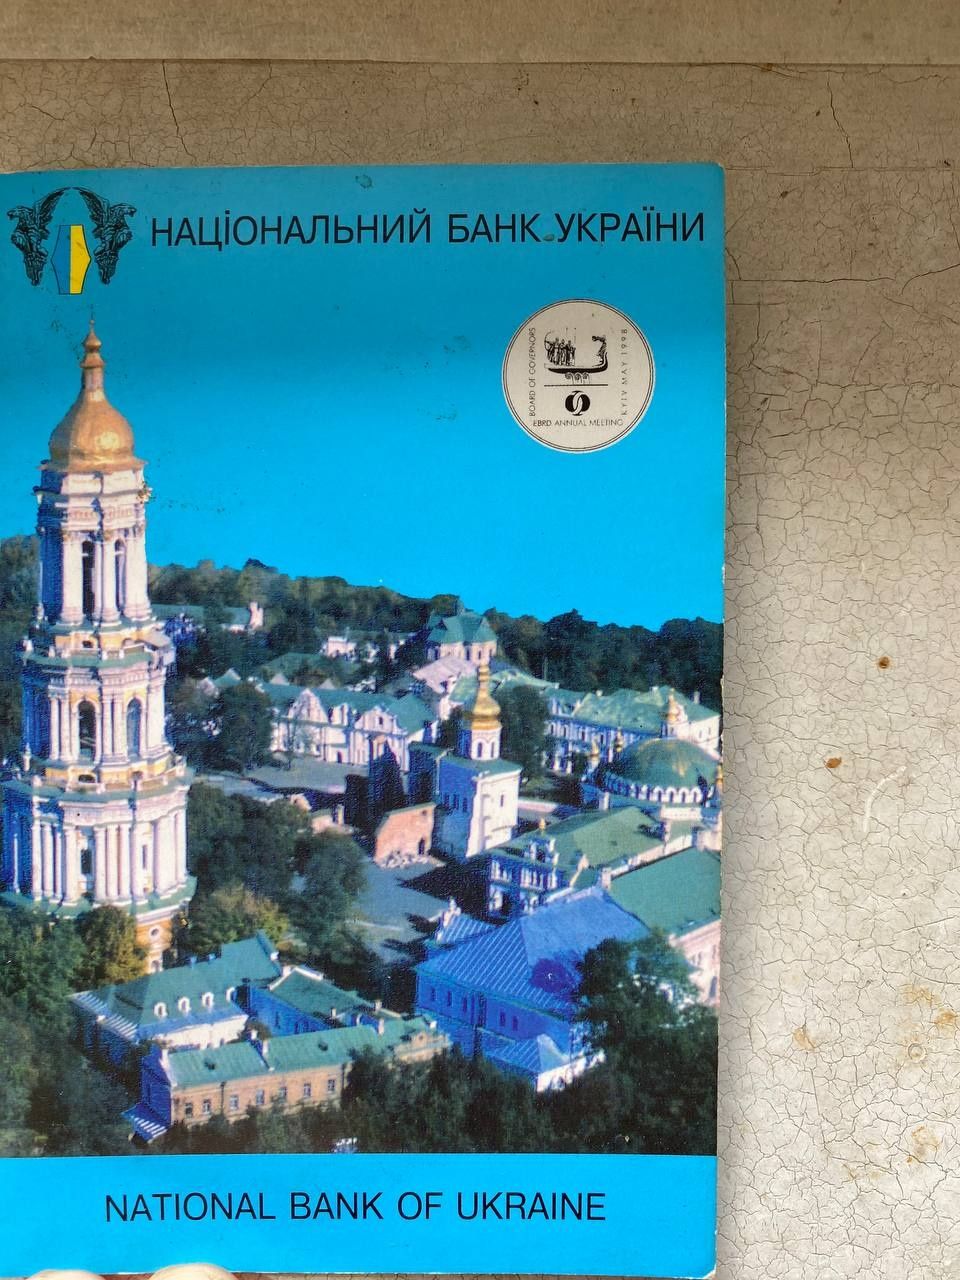 Продам монету, посвященную съезду ЕБРР в Киеве